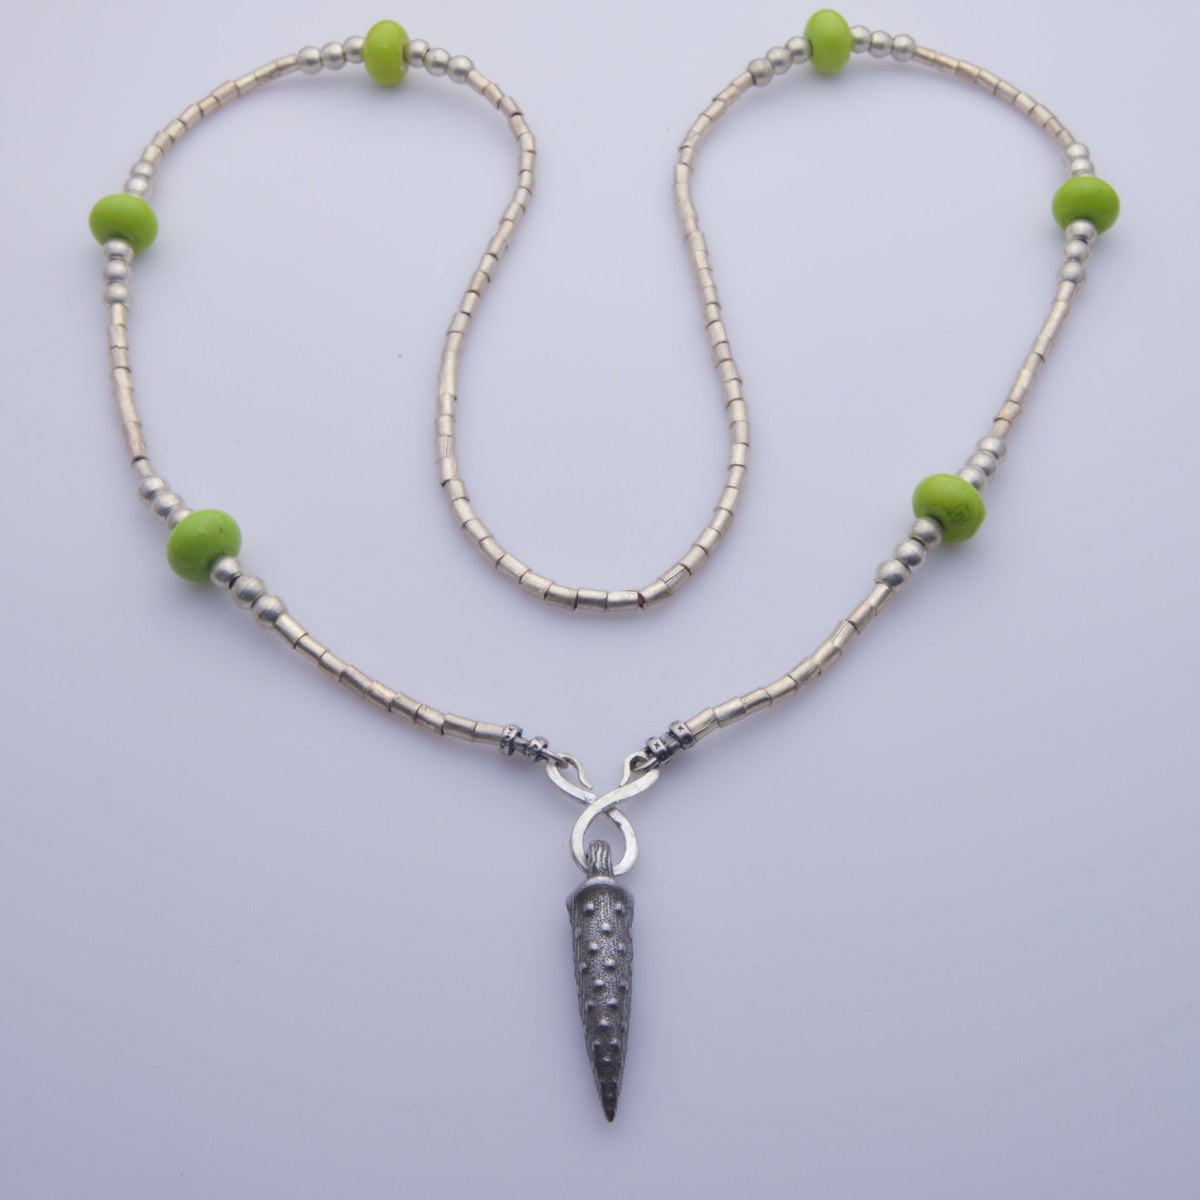 Unique and exquisite iron pendant necklace